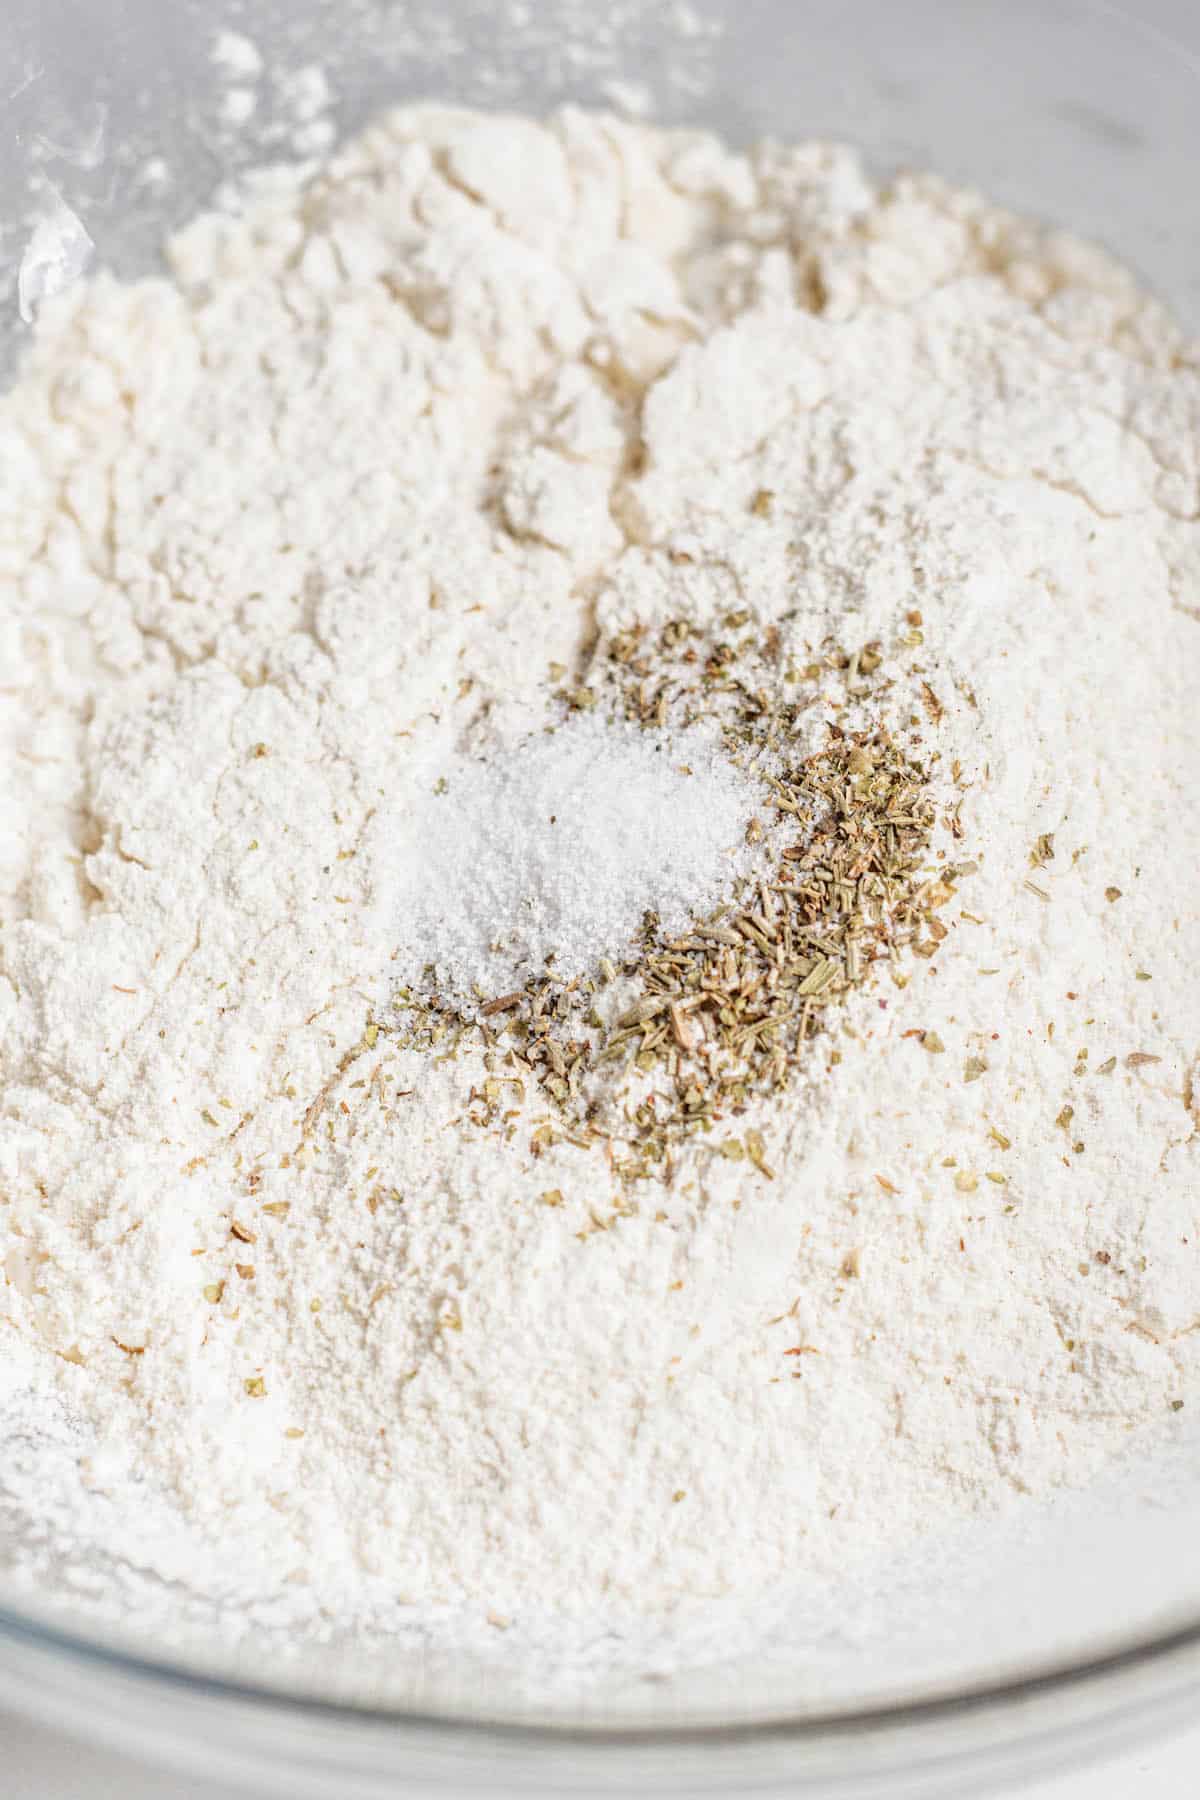 flour, herbs and salt.